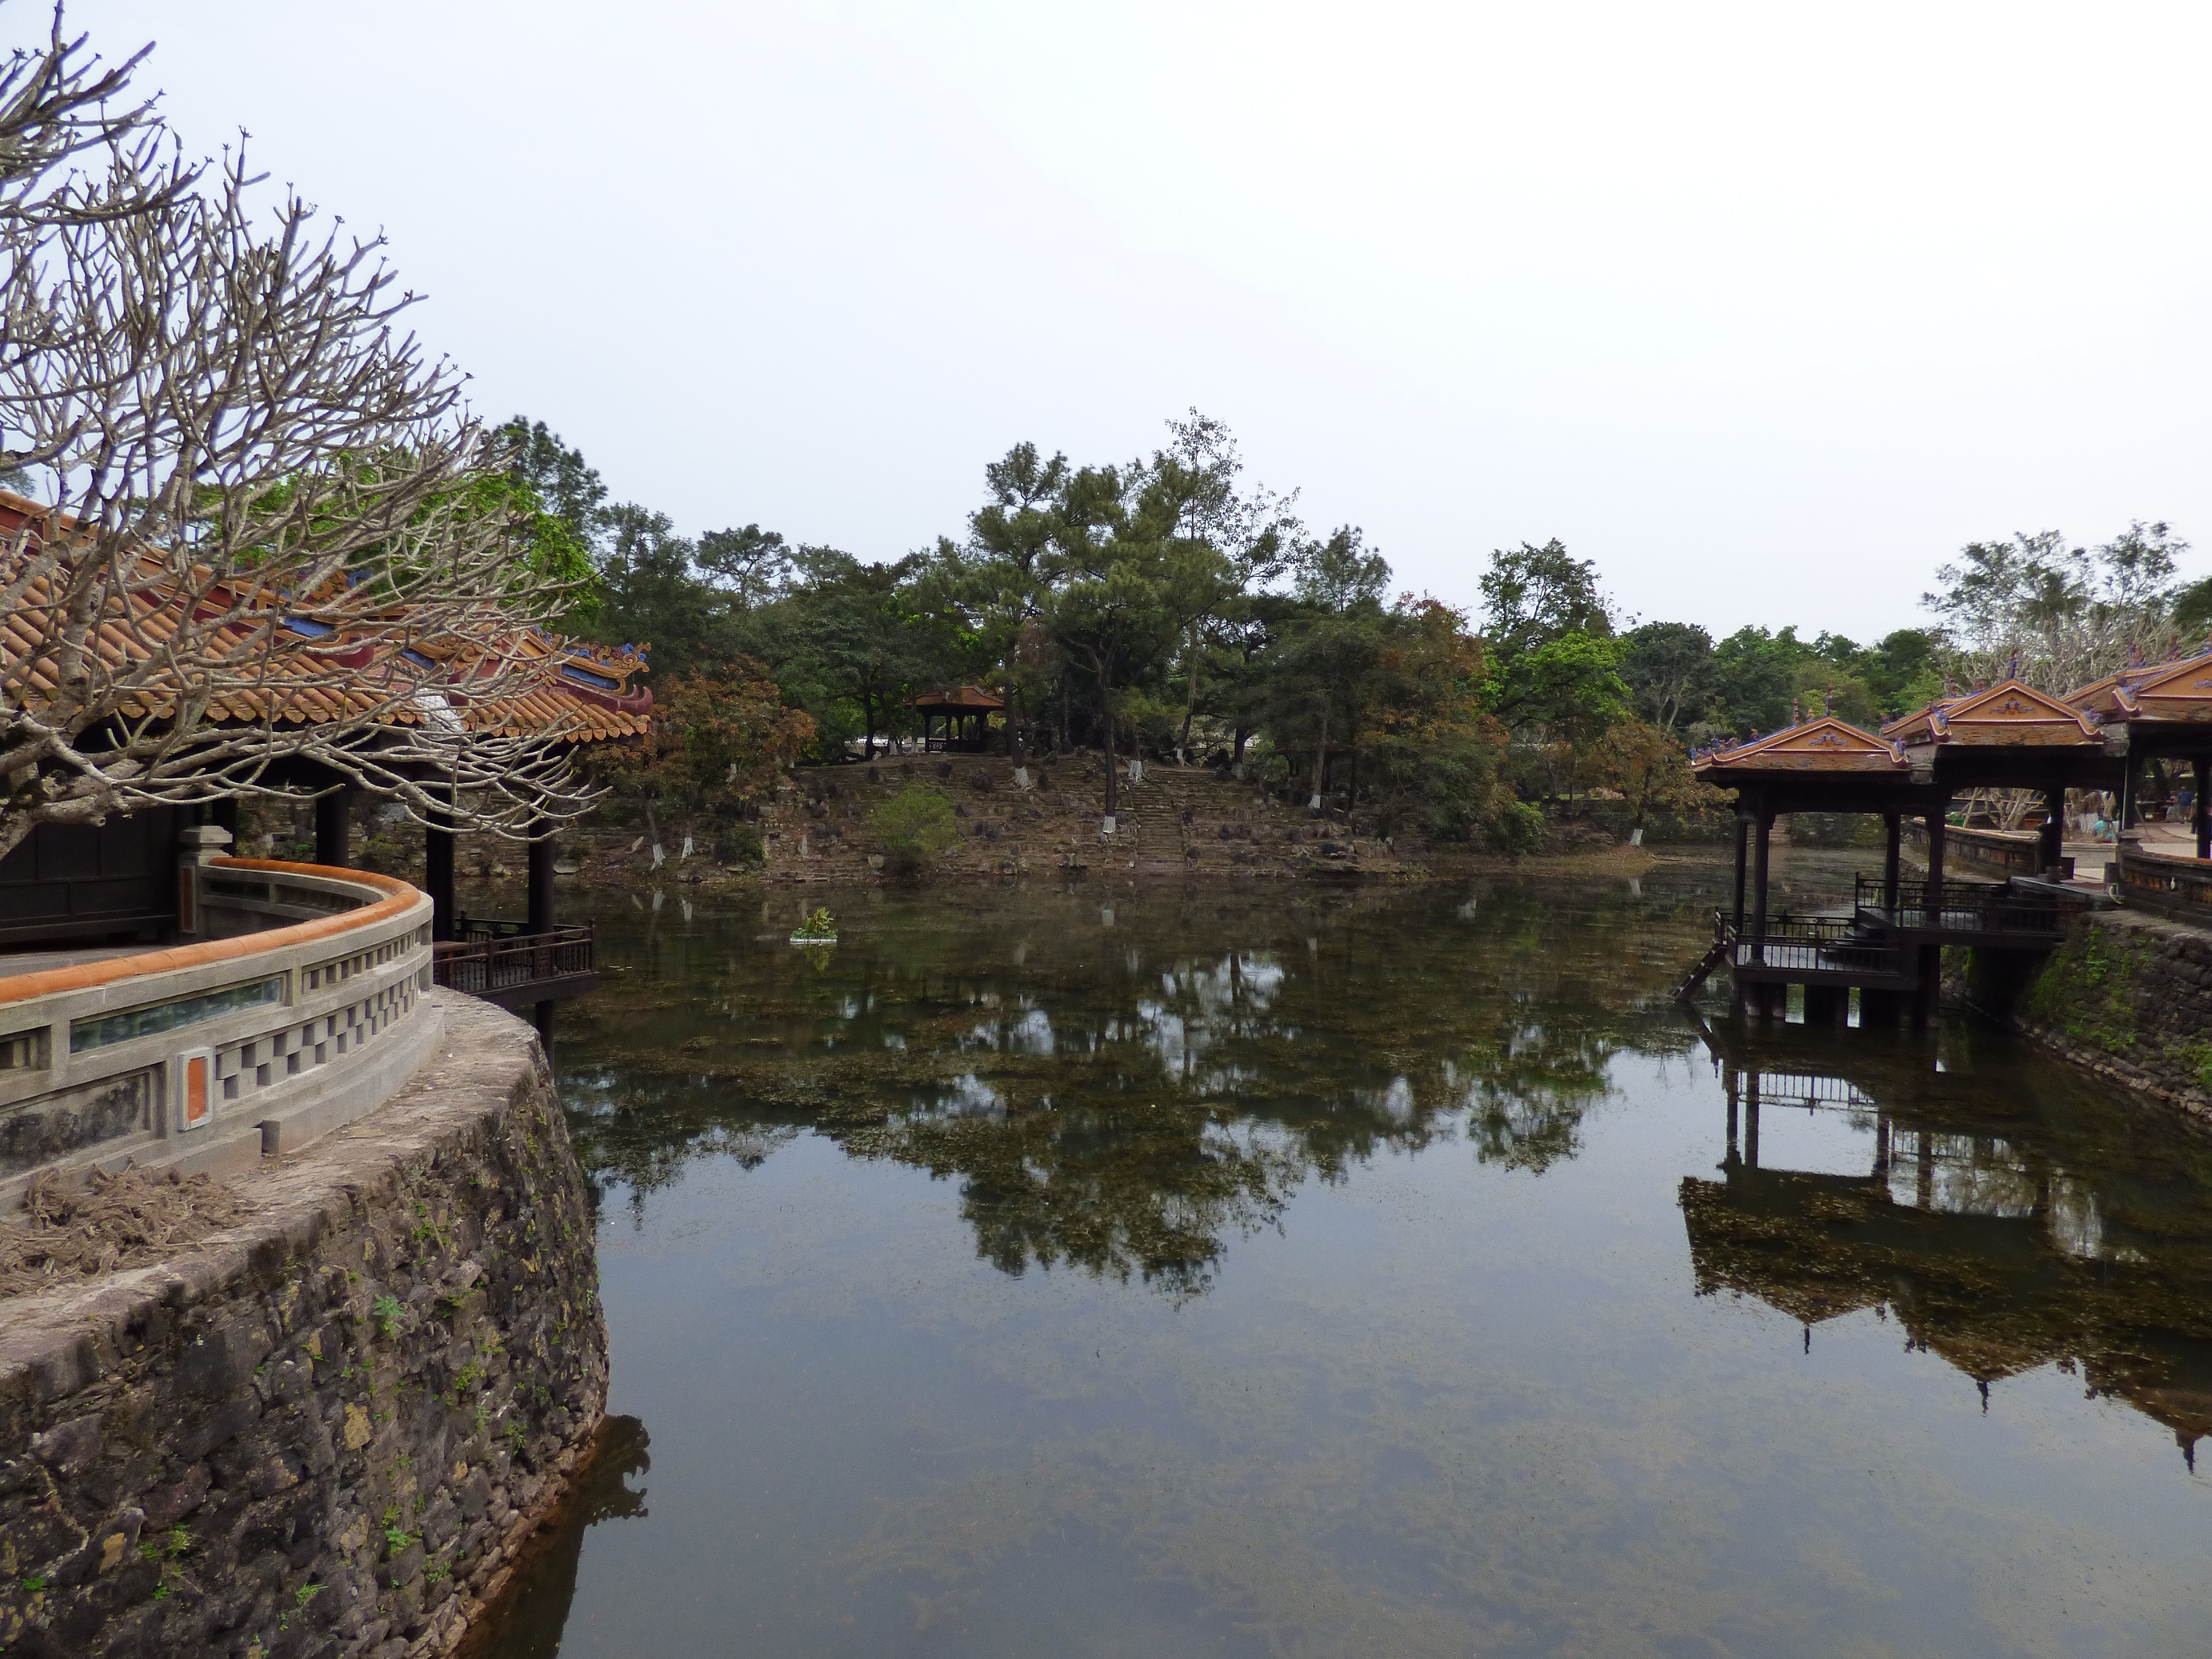 A szép park közepén egy tó van, amiben most csak kacsák, de a császár életében állítólag egzotikus állatok és madarak éltek.